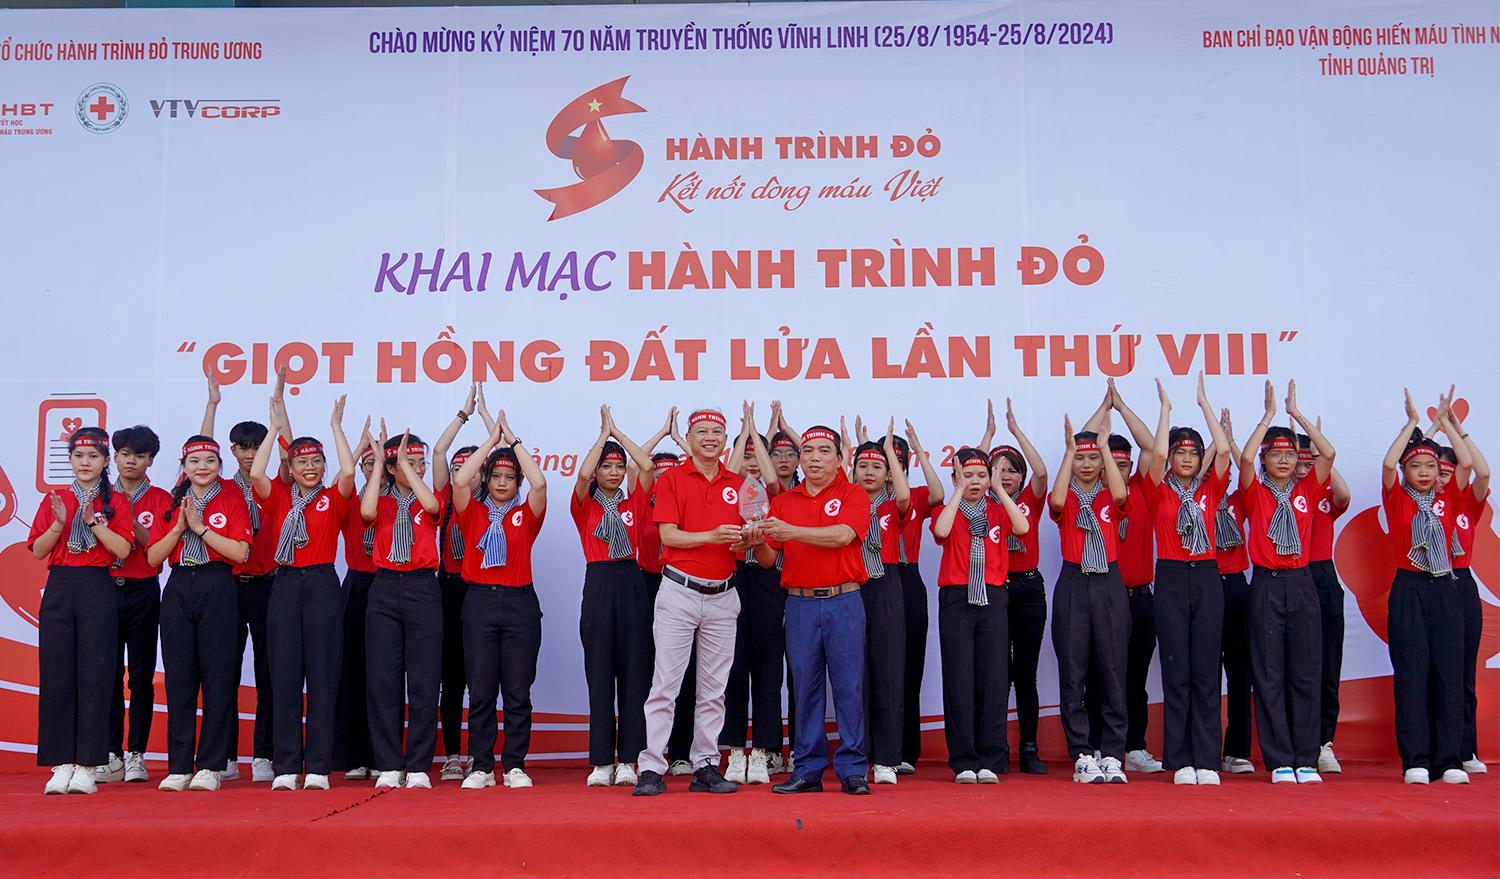 Hình trình đỏ là chương trình vận động hiến máu quy mô lớn nhất Việt Nam.